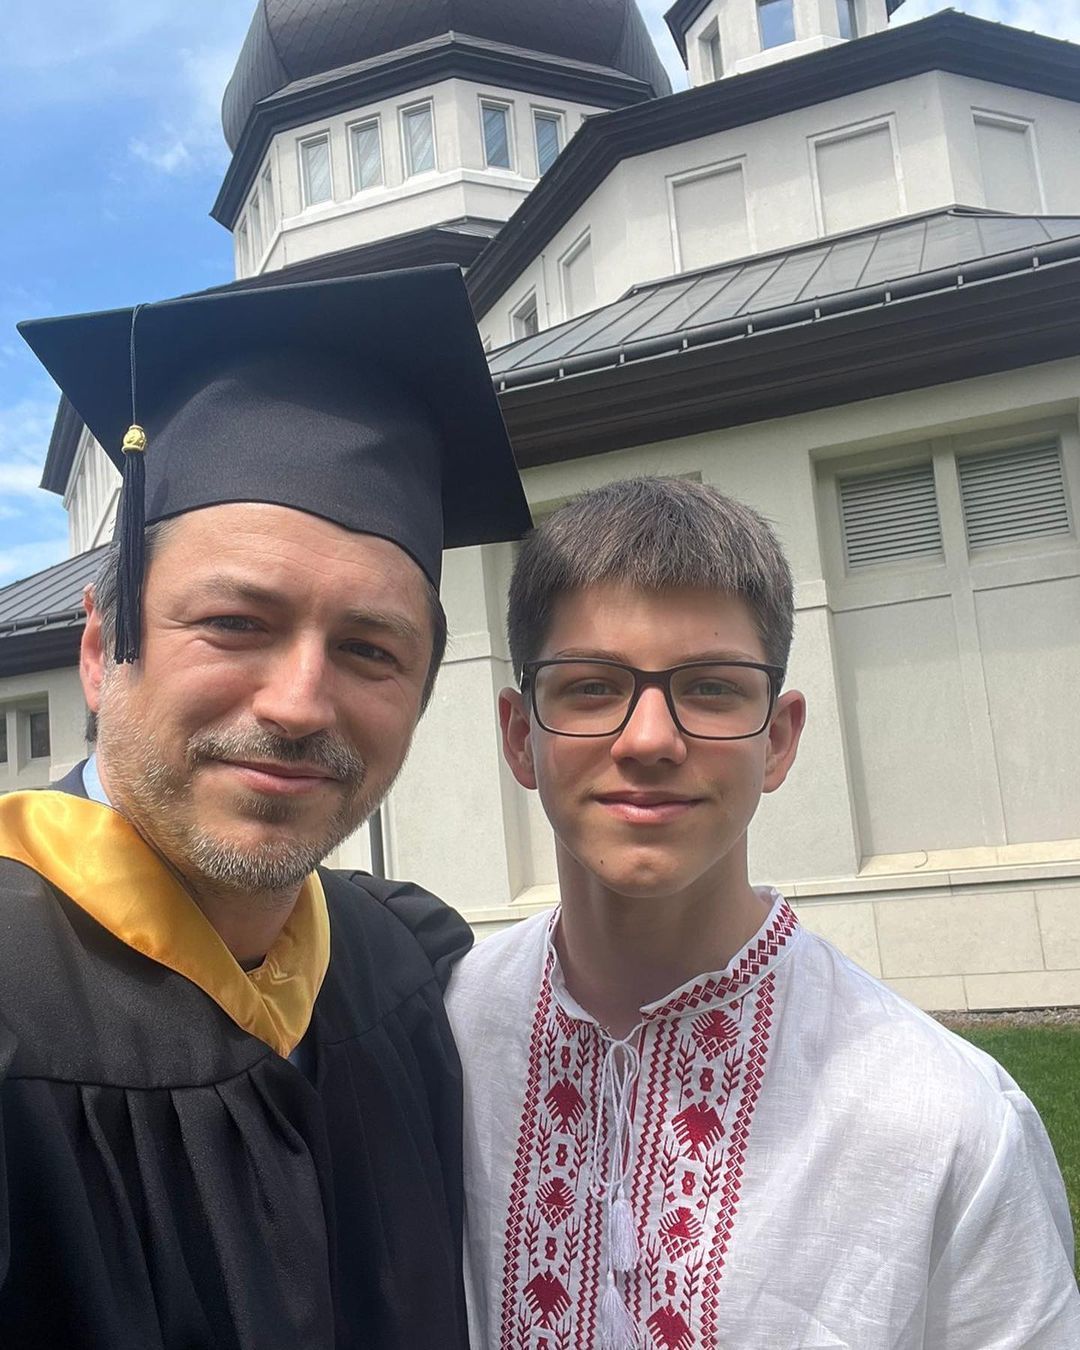 Сергей Притула также рассказал о забавной реакции его сына Дмитрия на то, что его отец стал выпускником.